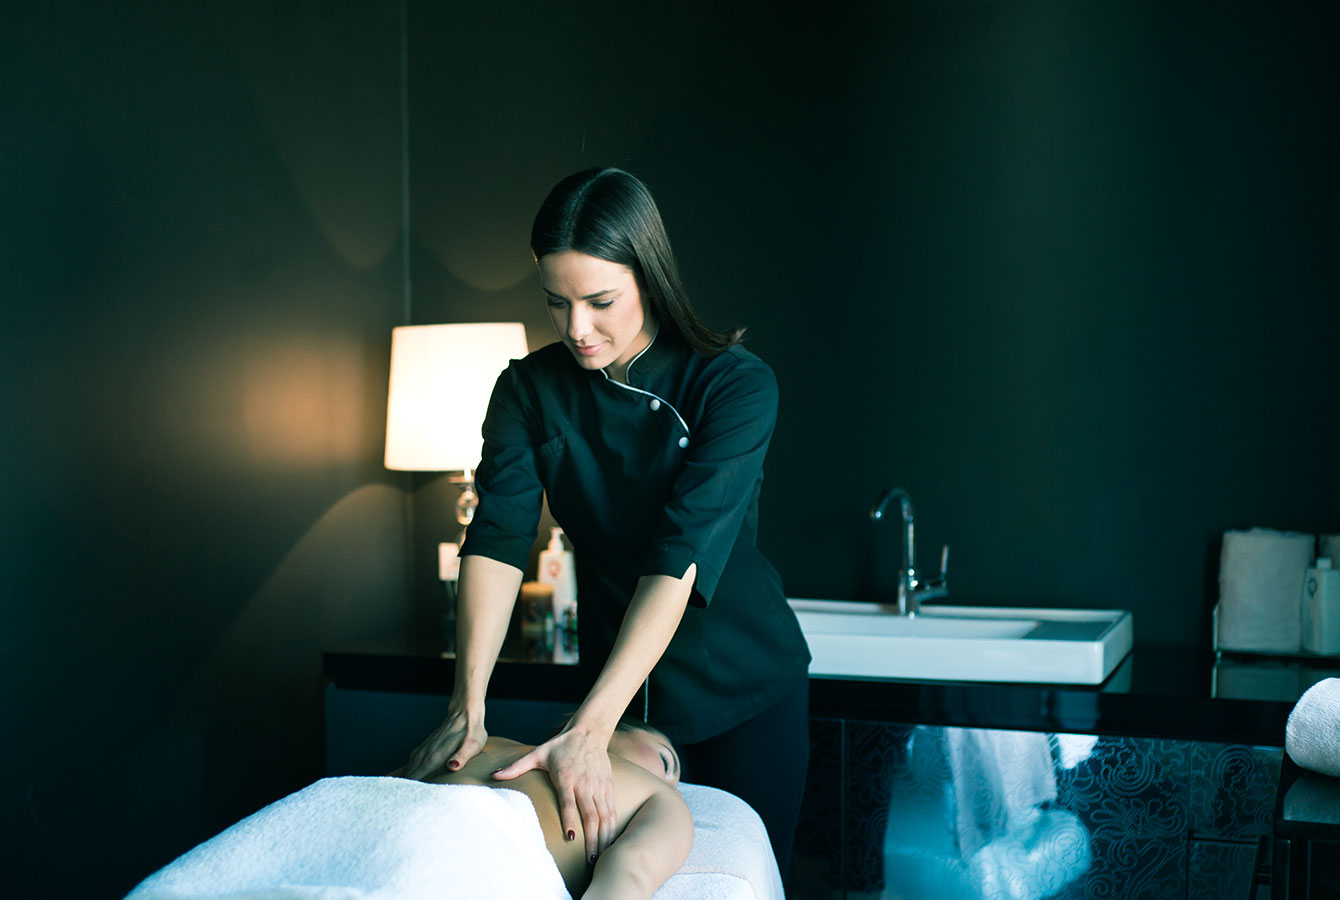 Терапеут за масажу пружа услугу која је резервисана помоћу апликације Планфи.